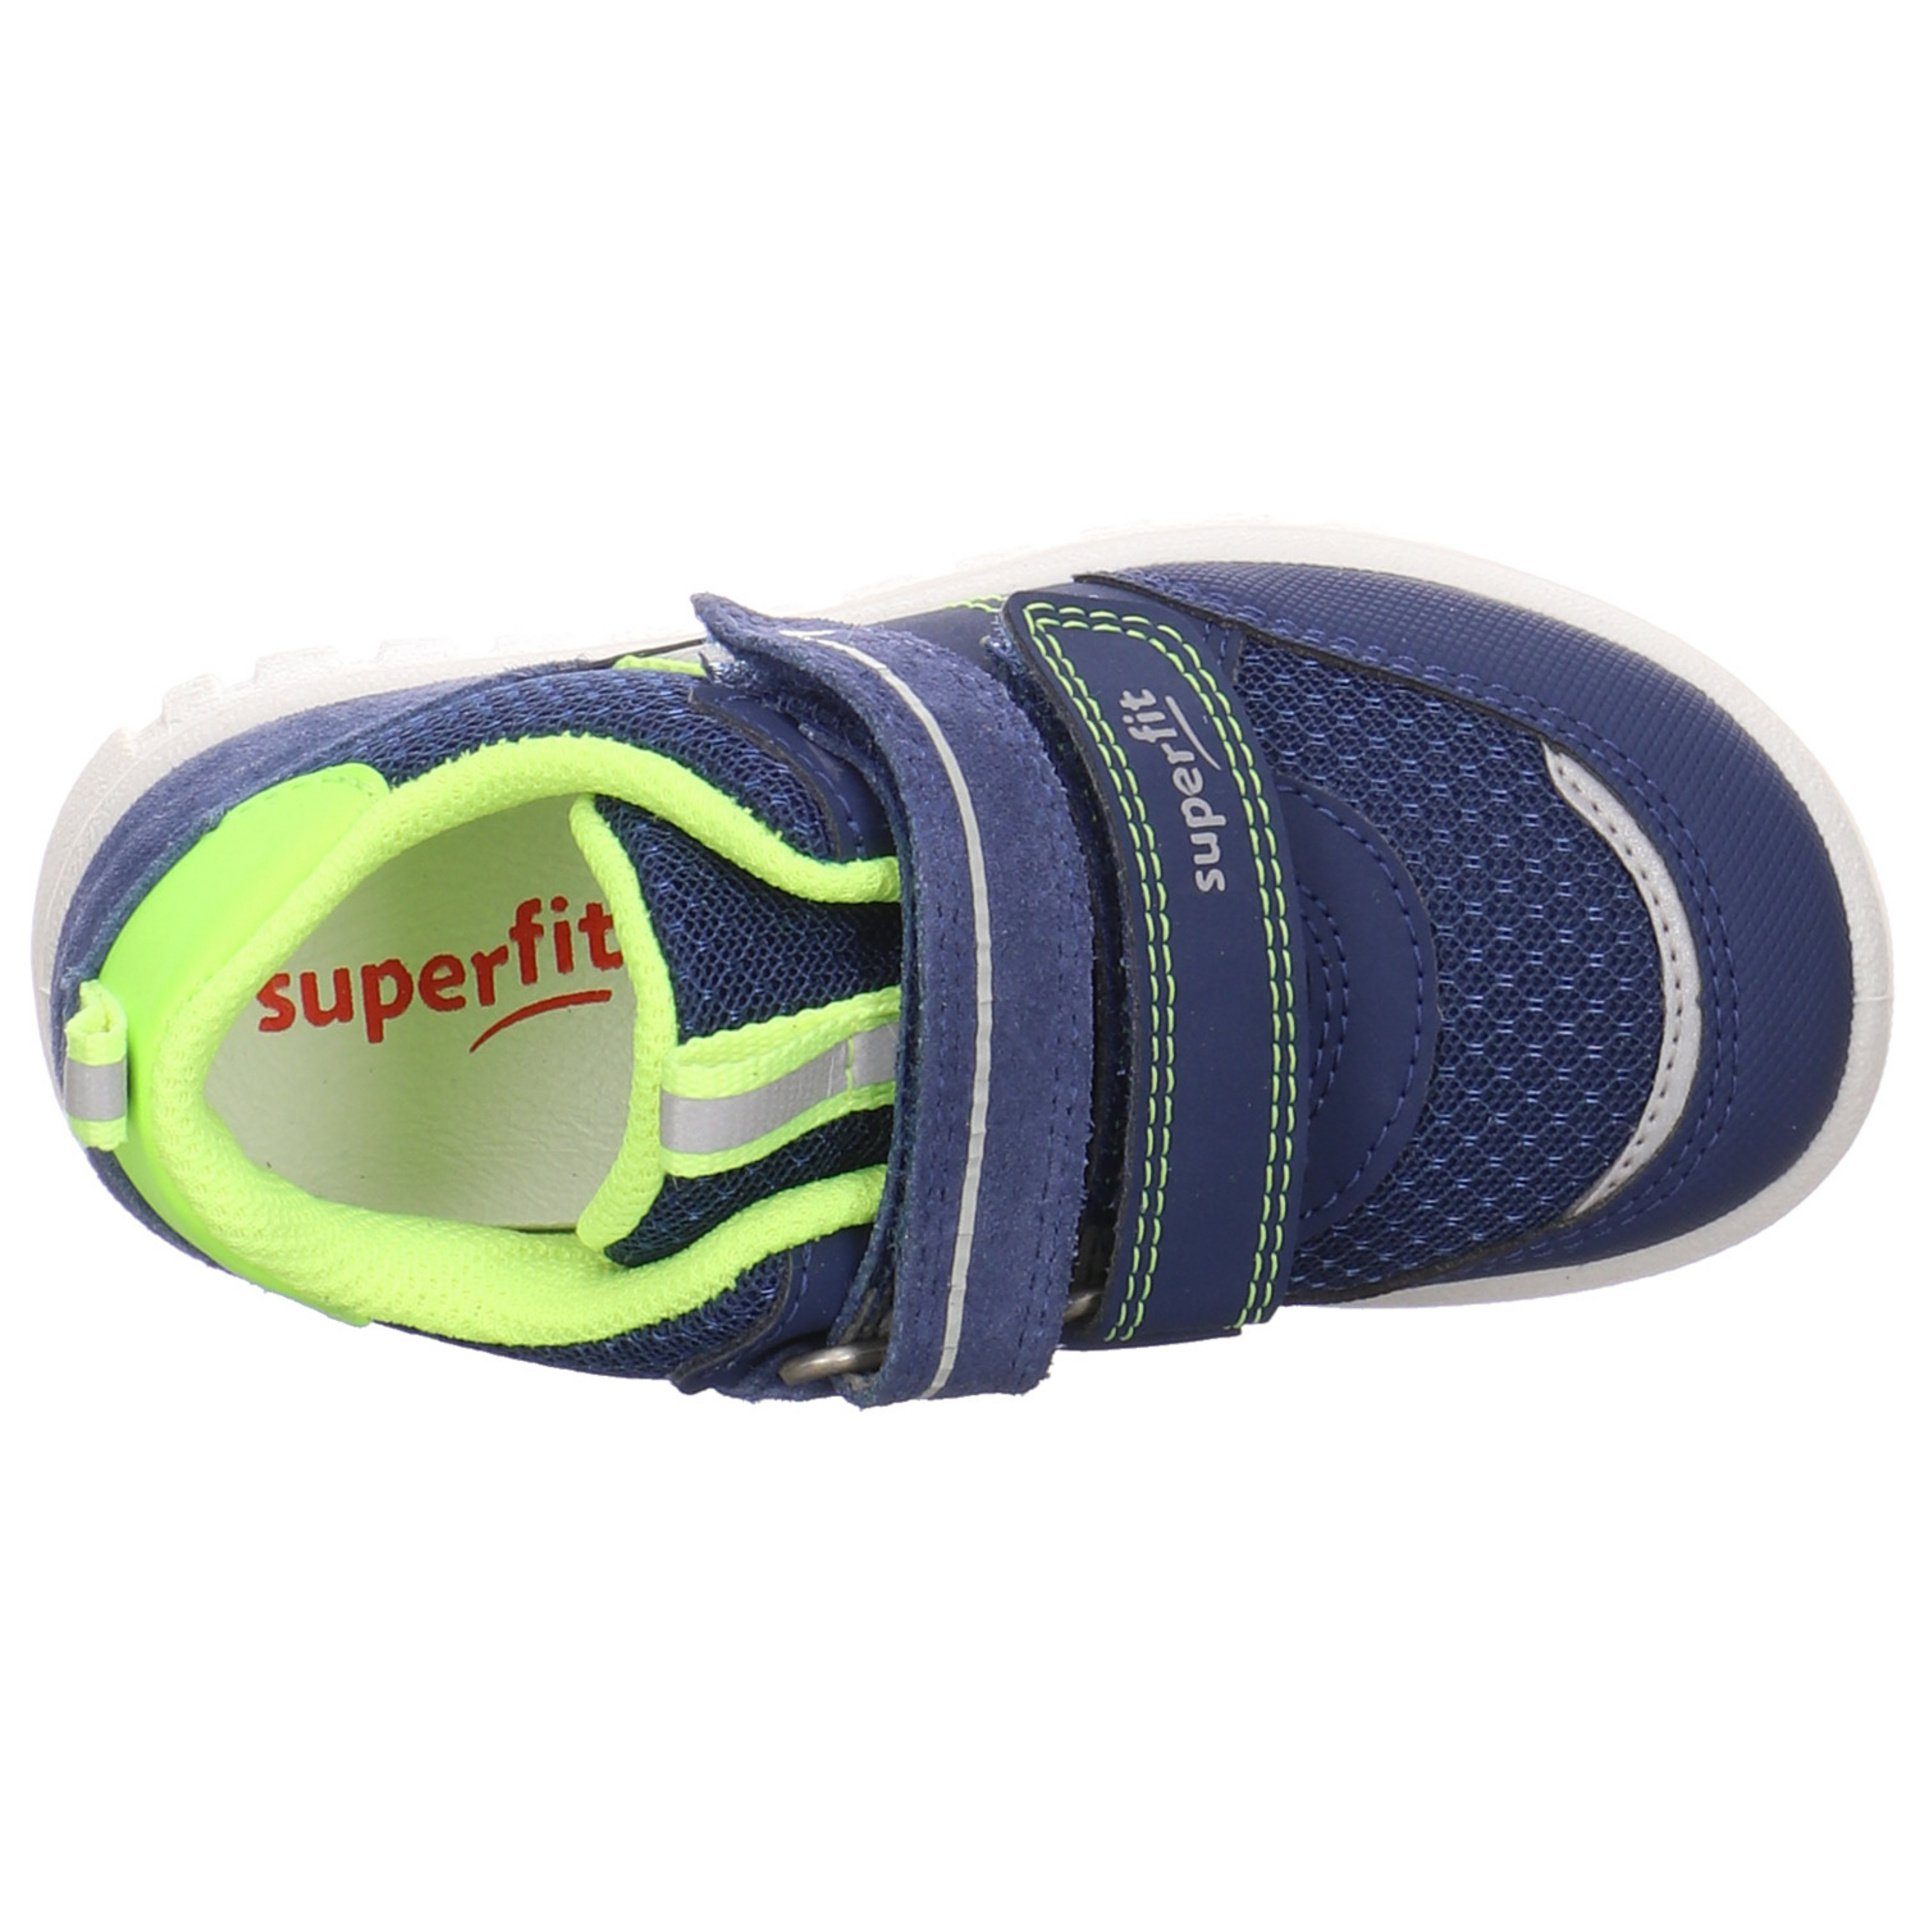 Sport7 reflektierende Synthetikkombination Sneaker Superfit Details BLAU/GELB Sneaker (20401985) Mini